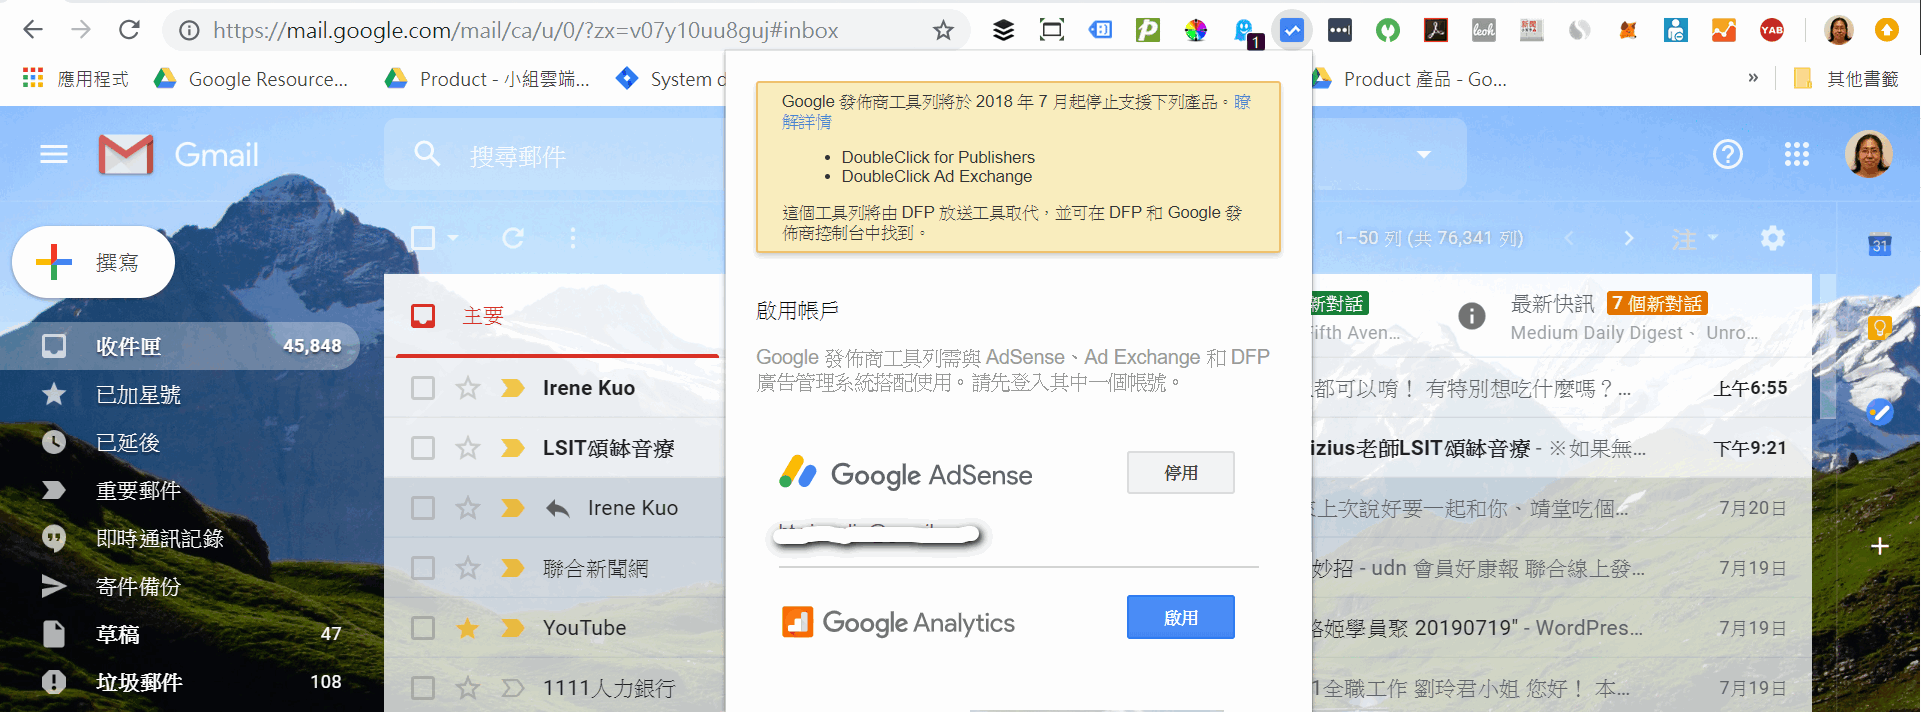 Google Publisher Toolbar登入畫面